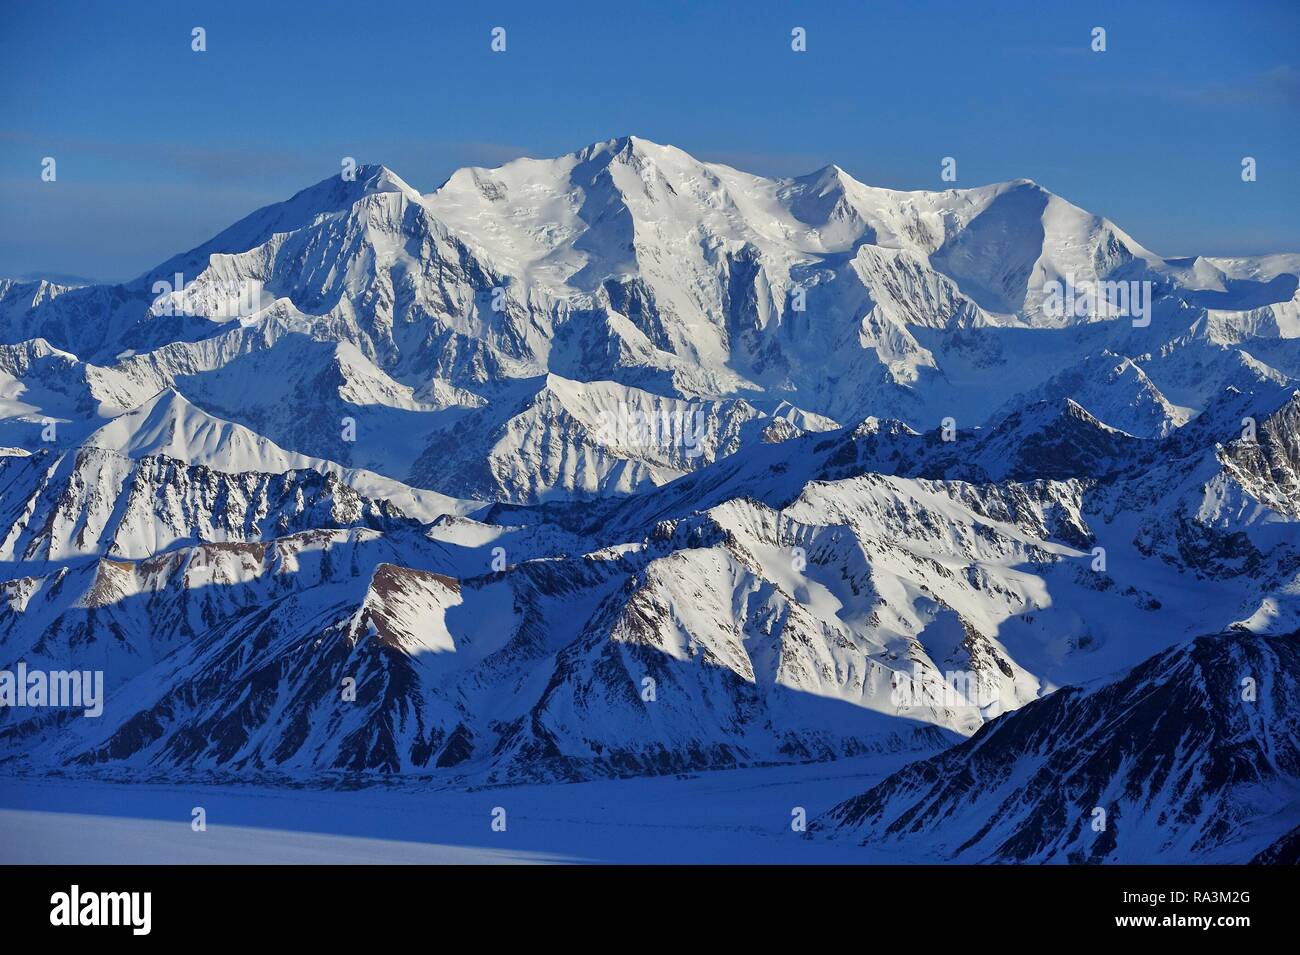 Mount Lucania, 5240 m, St. Elias Mountains, Icefield Ranges, Yukon Territory, Canada Stock Photo